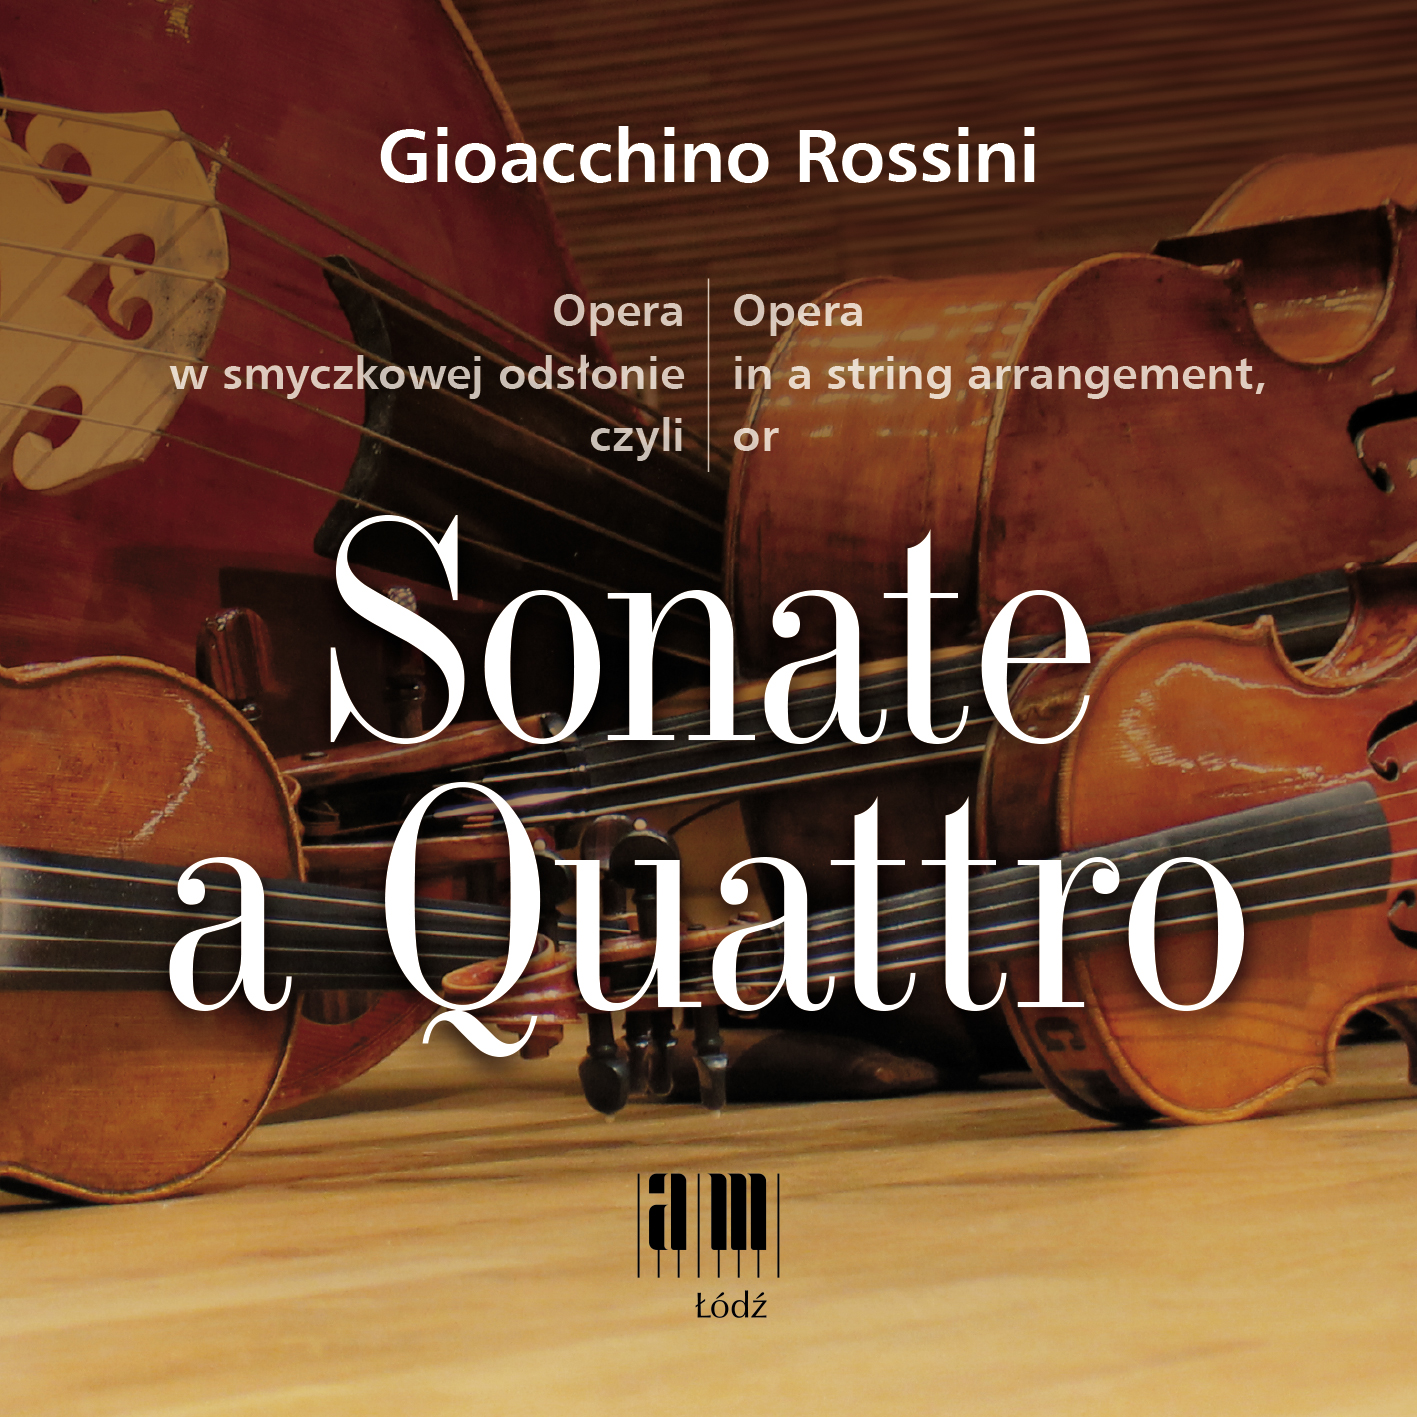 Opera w smyczkowej odsłonie czyli Sonate a Quattro